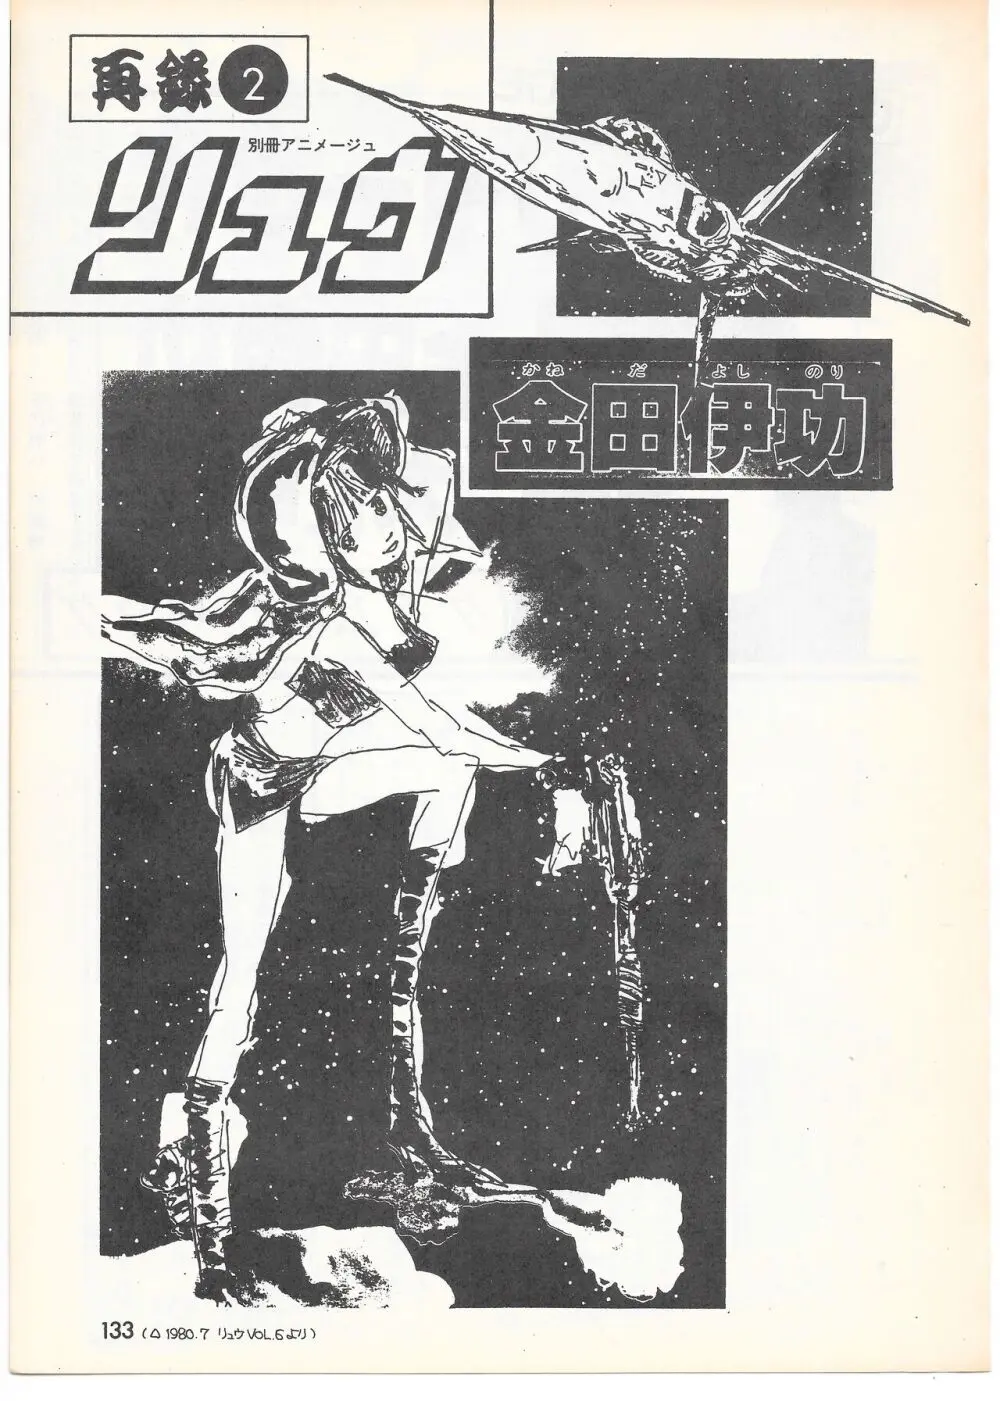 THE ANIMATOR 1 金田伊功特集号 128ページ